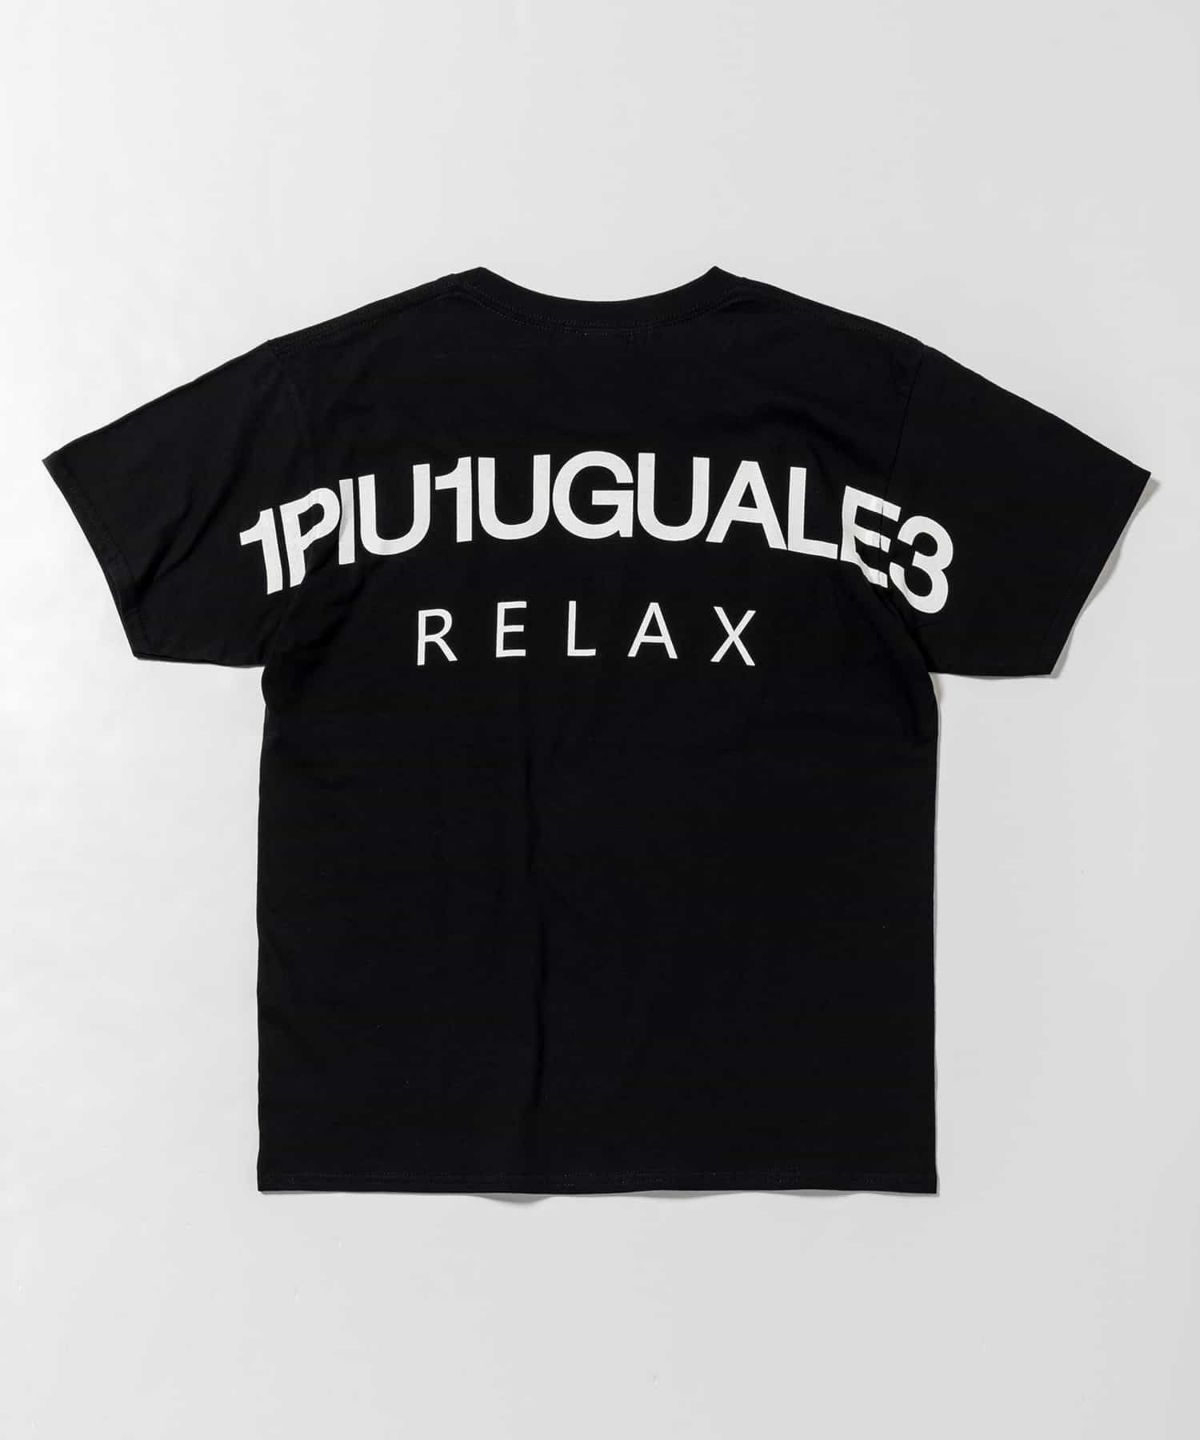 結構タイトな感じですPIU1UGUALE3 RELAX - cartaoclivale.com.br